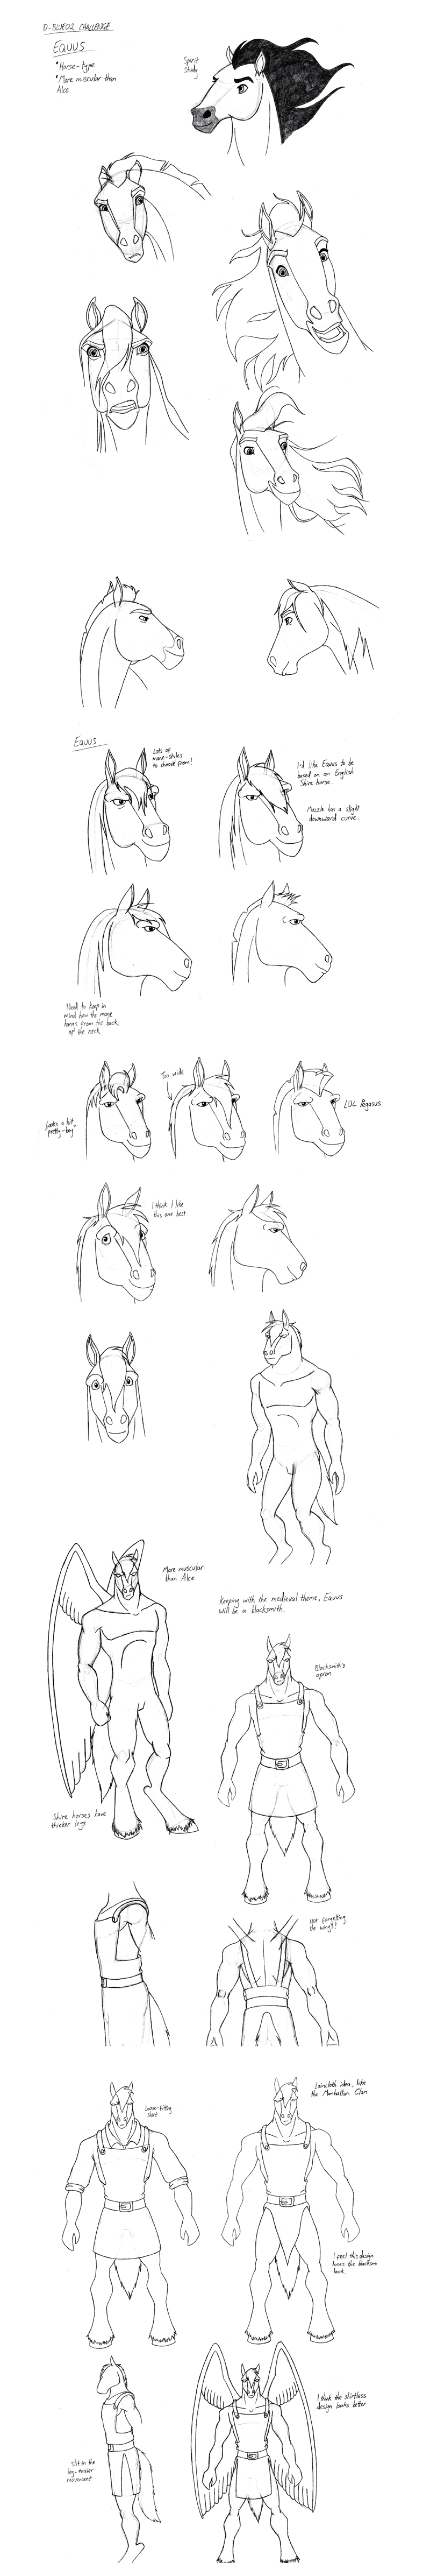 Equus Development by Triss